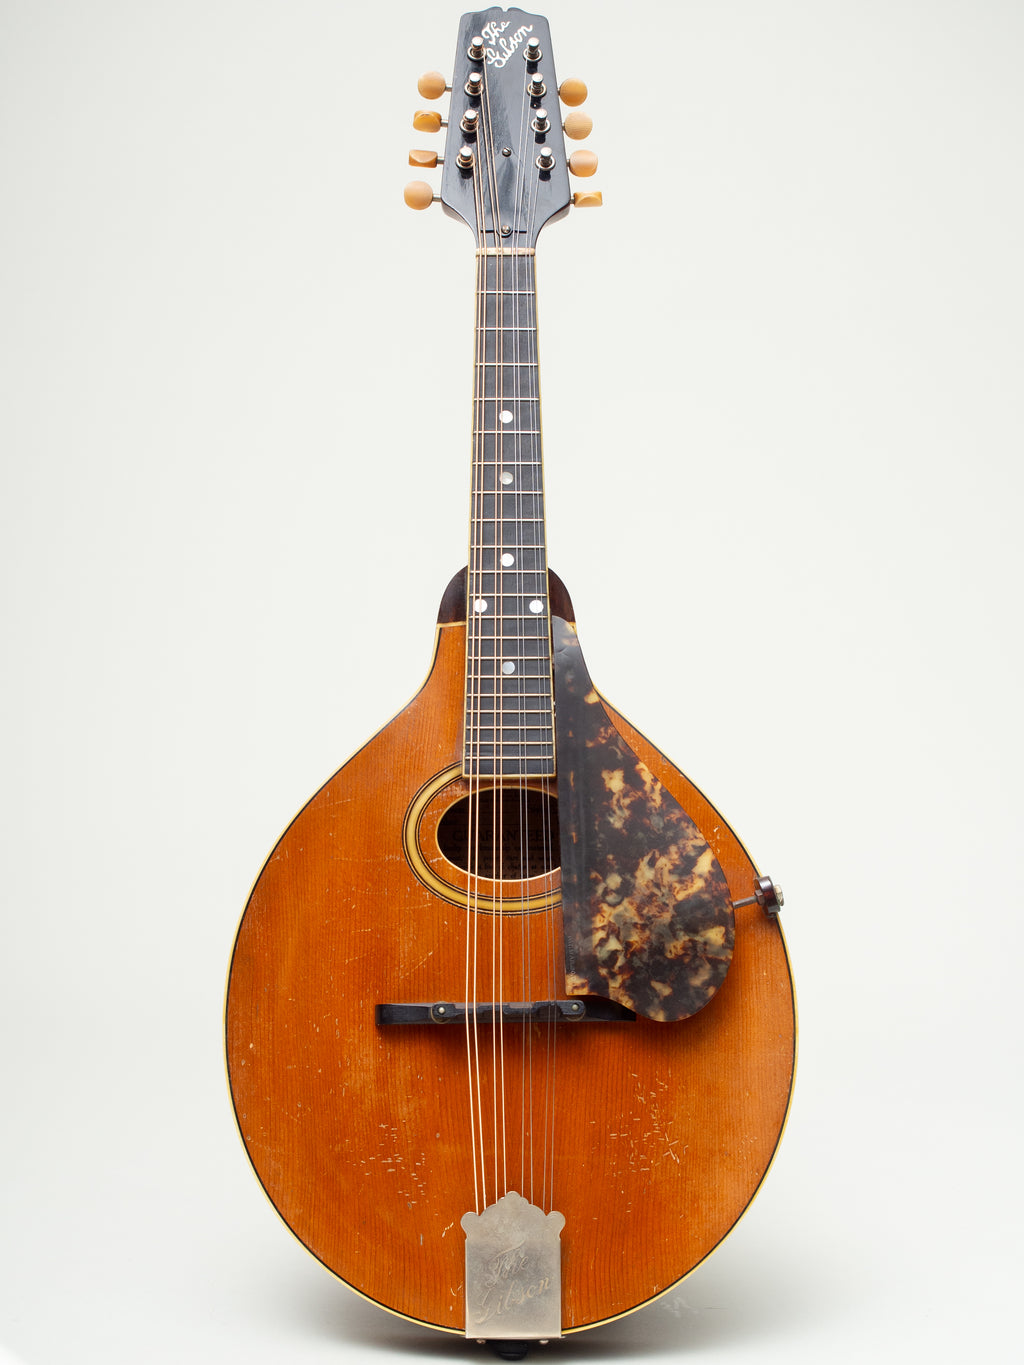 1923 Gibson A2-Z